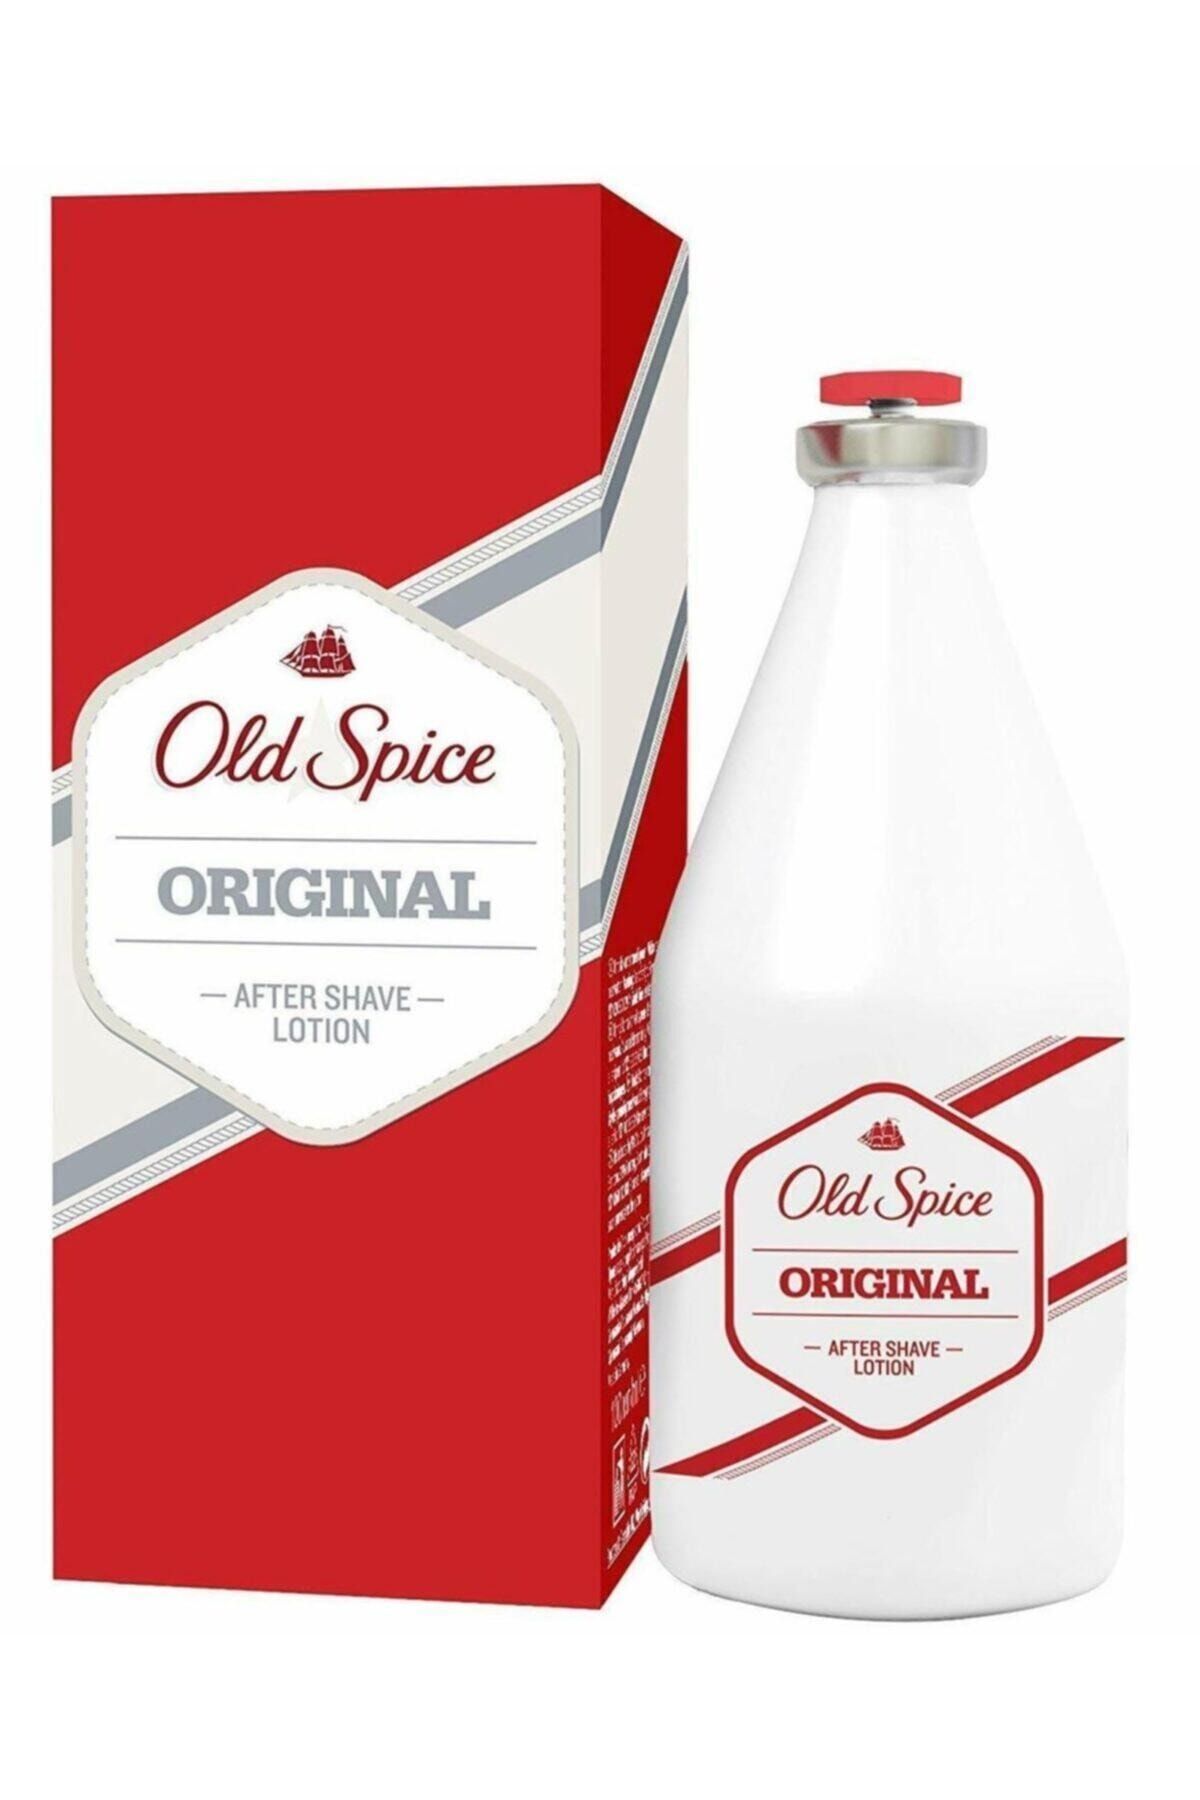 Old Spice Old Spıce After Shave Losyon Orıgınal 150ml